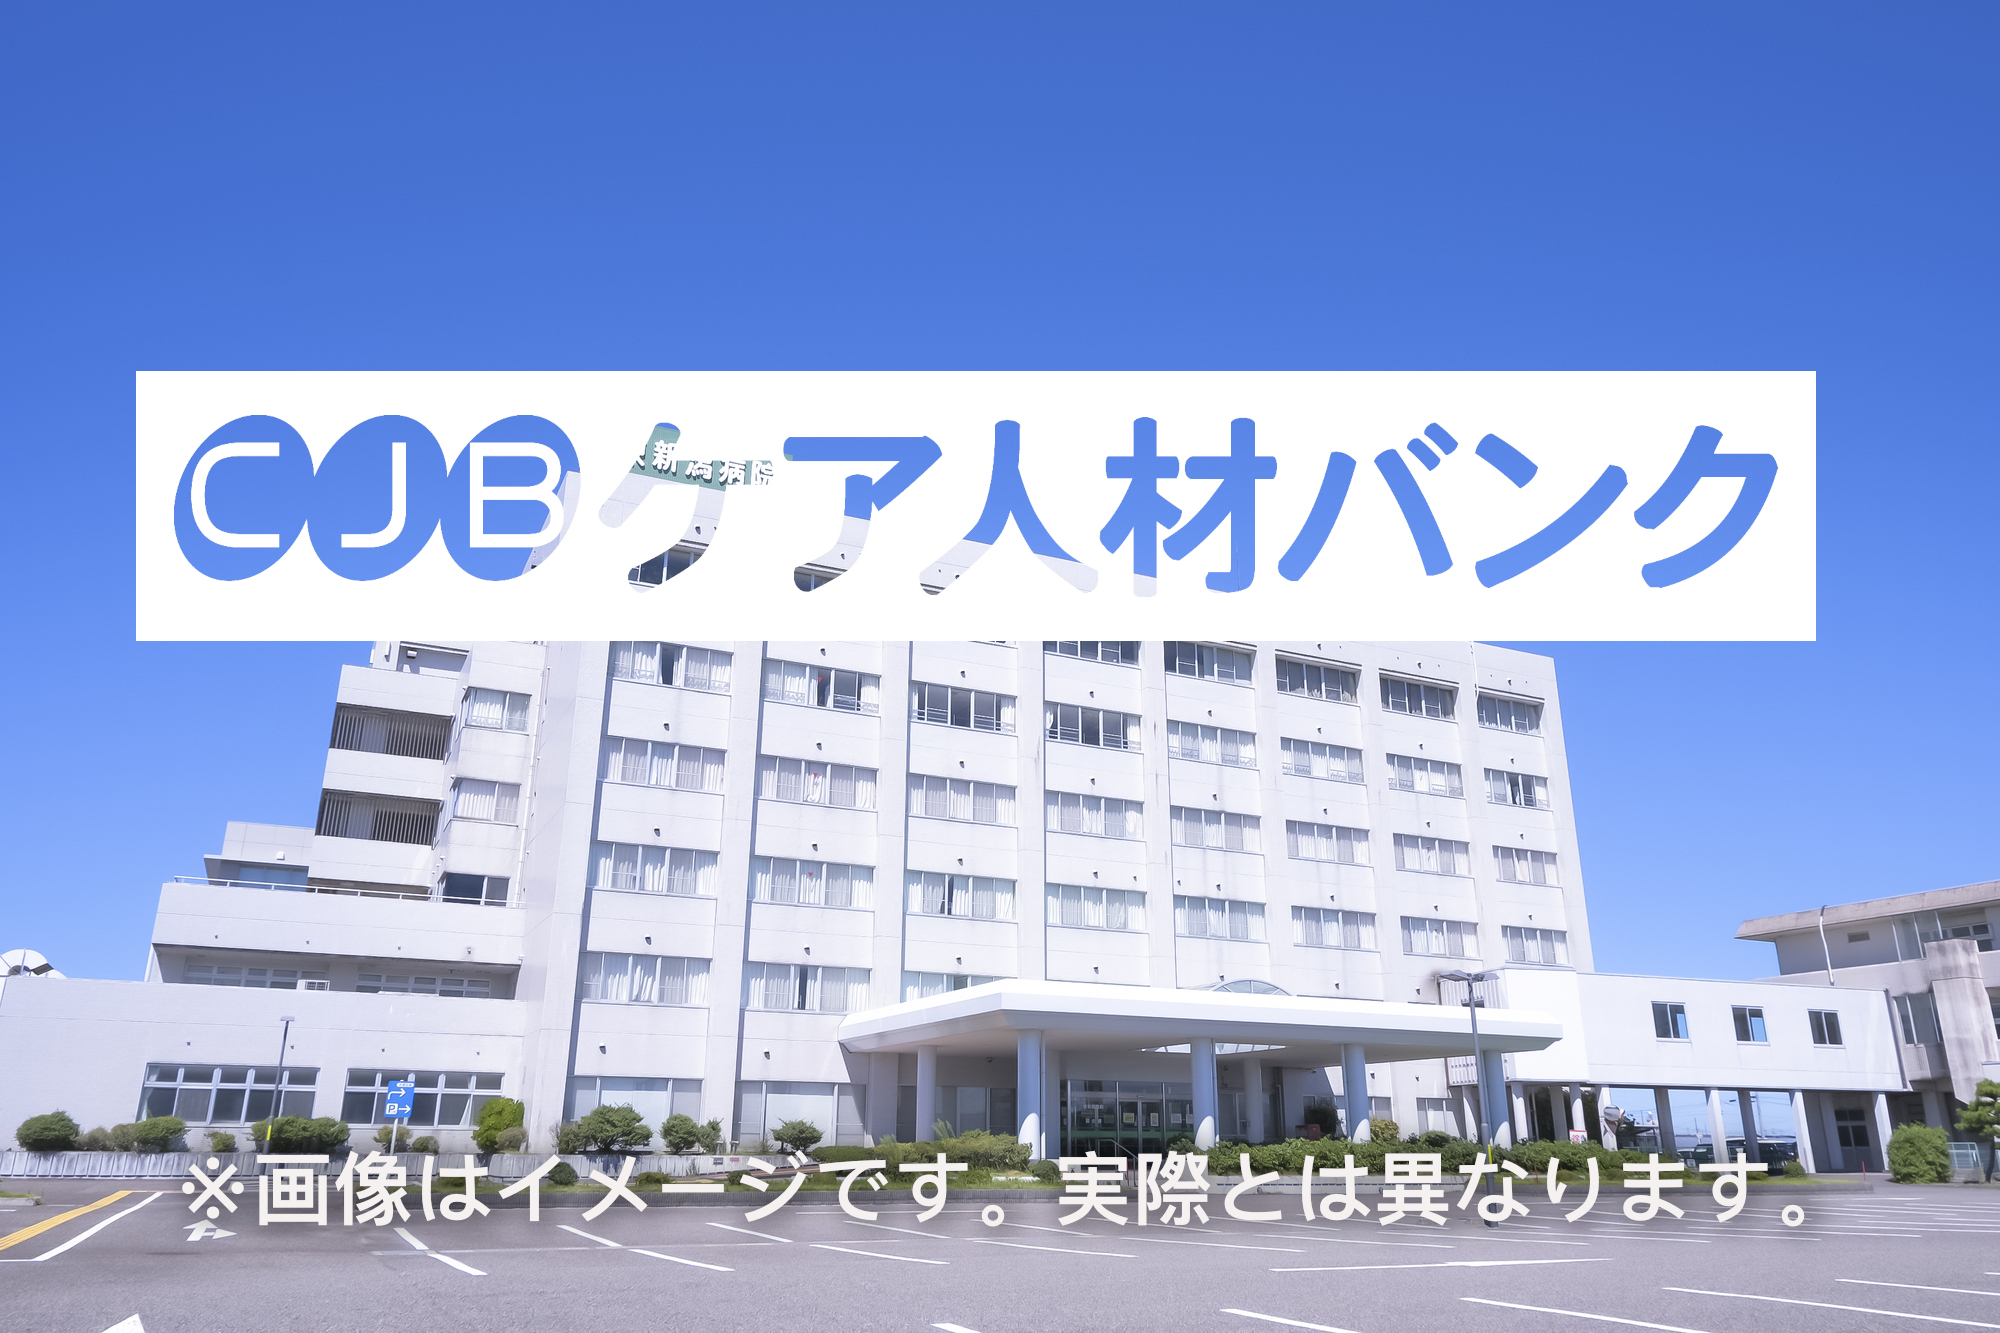  佐賀県鳥栖市・病院常勤 社会福祉士の非公開求人情報のイメージ画像